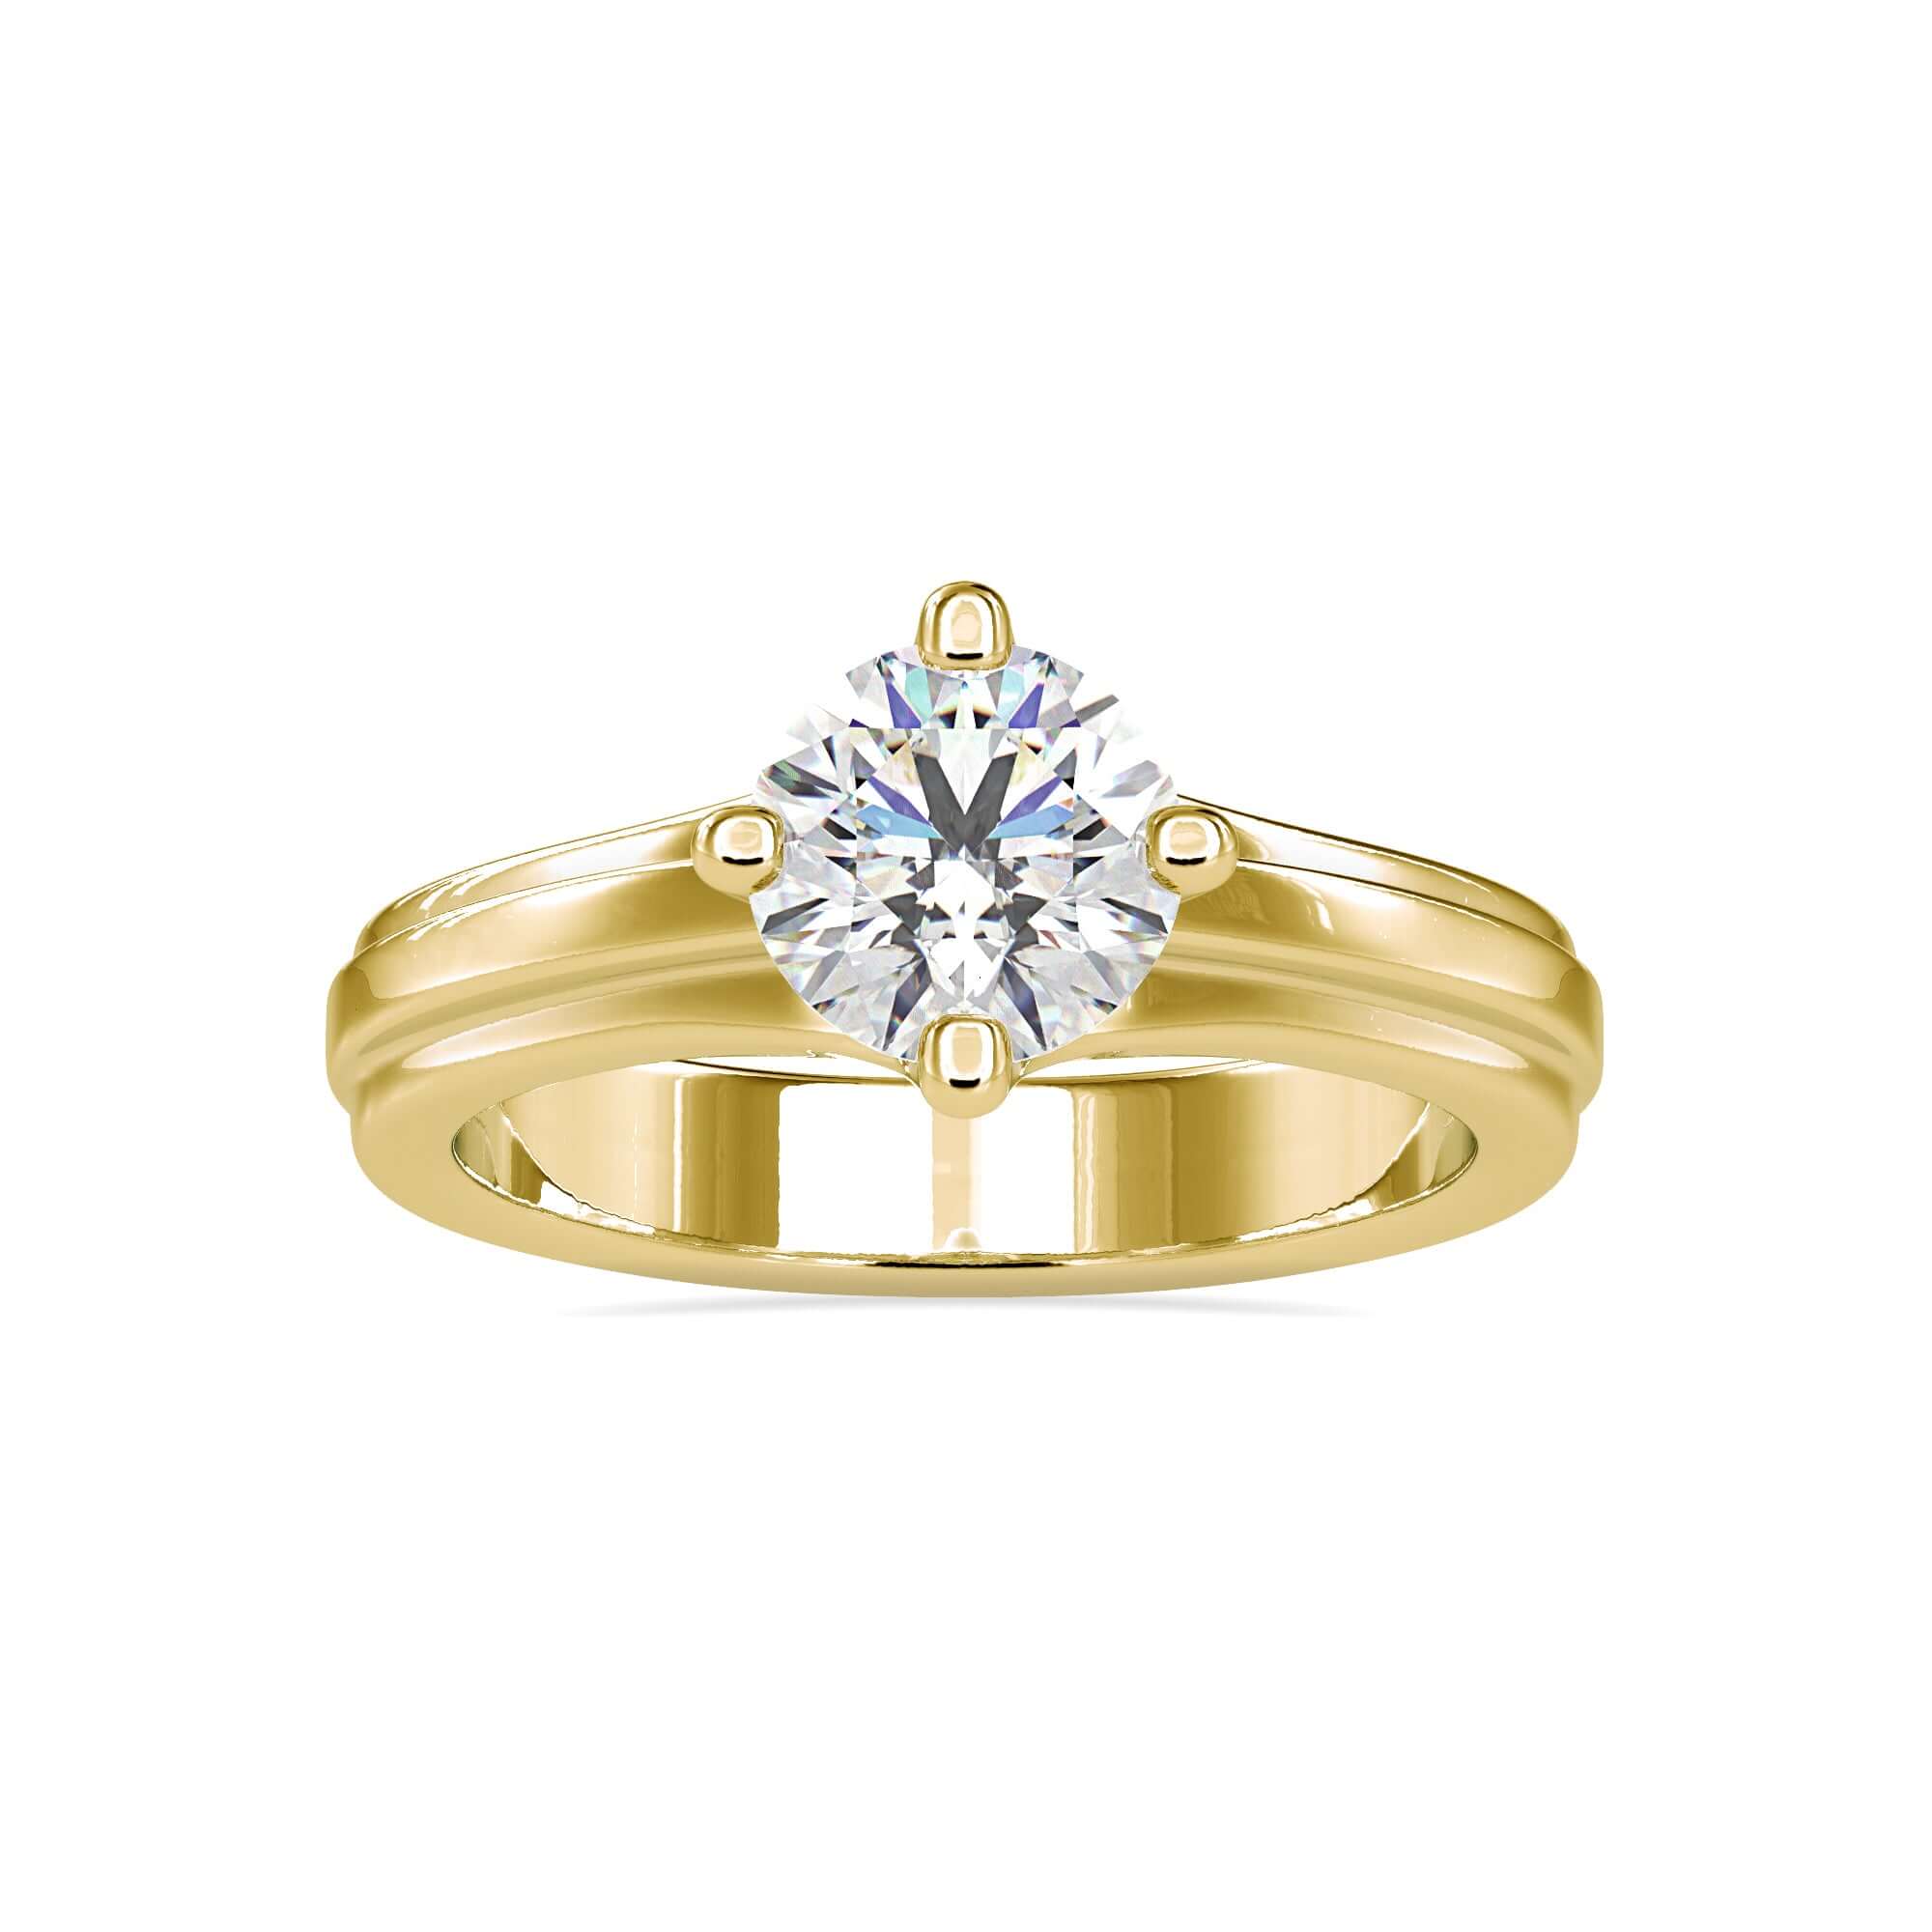 round solitaire engagement ring - diamondrensu